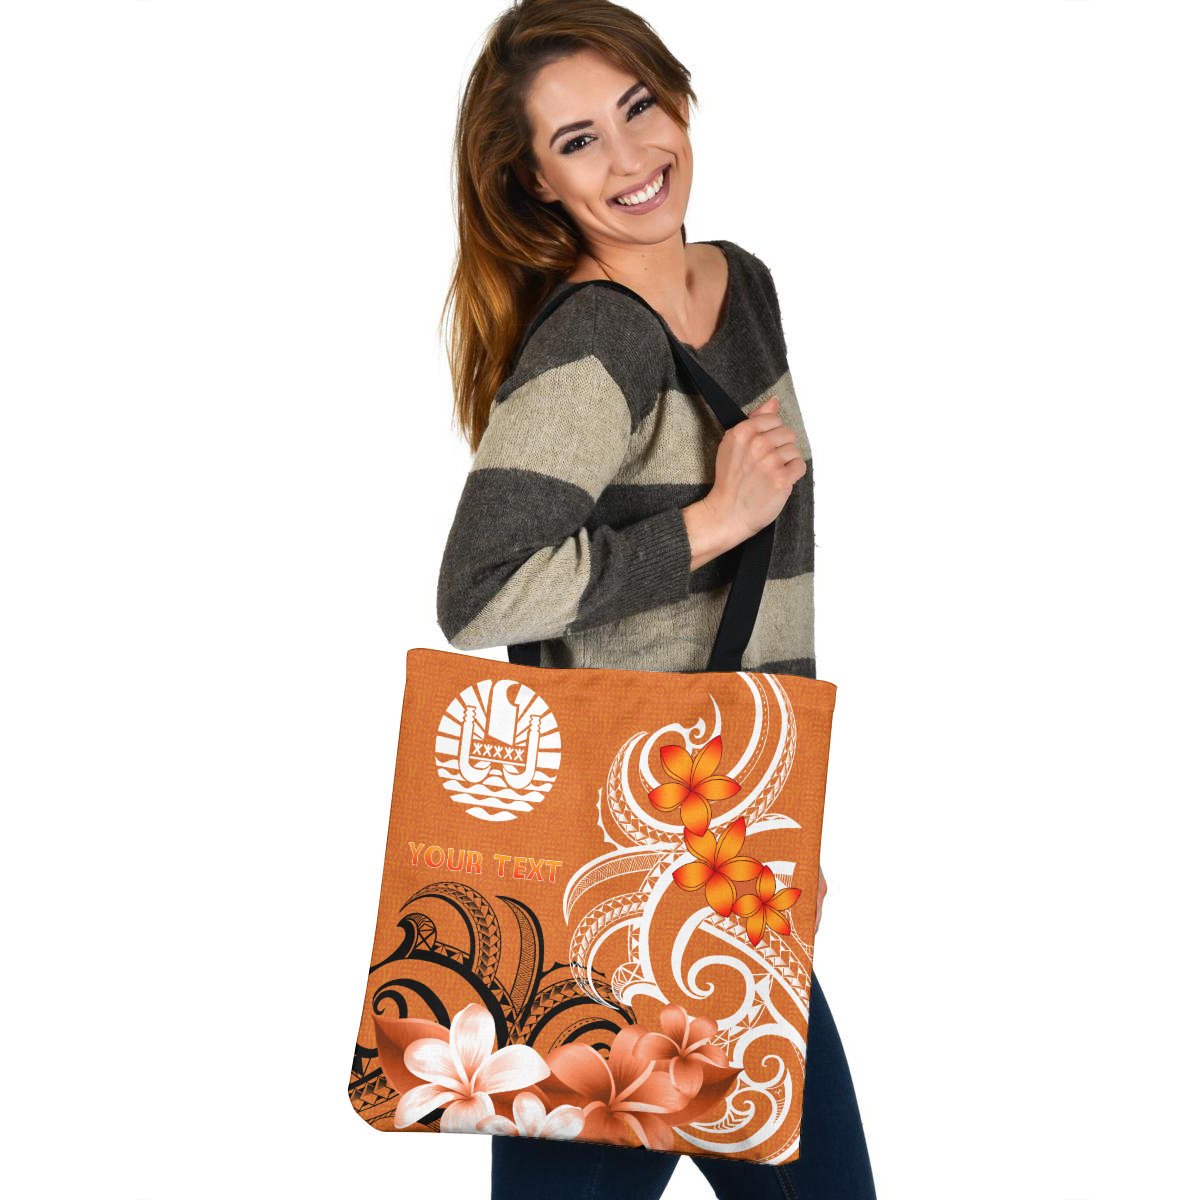 Custom Tahiti Personalised Tote Bags - Tahitians Spirit Tote Bag One Size Orange - Polynesian Pride